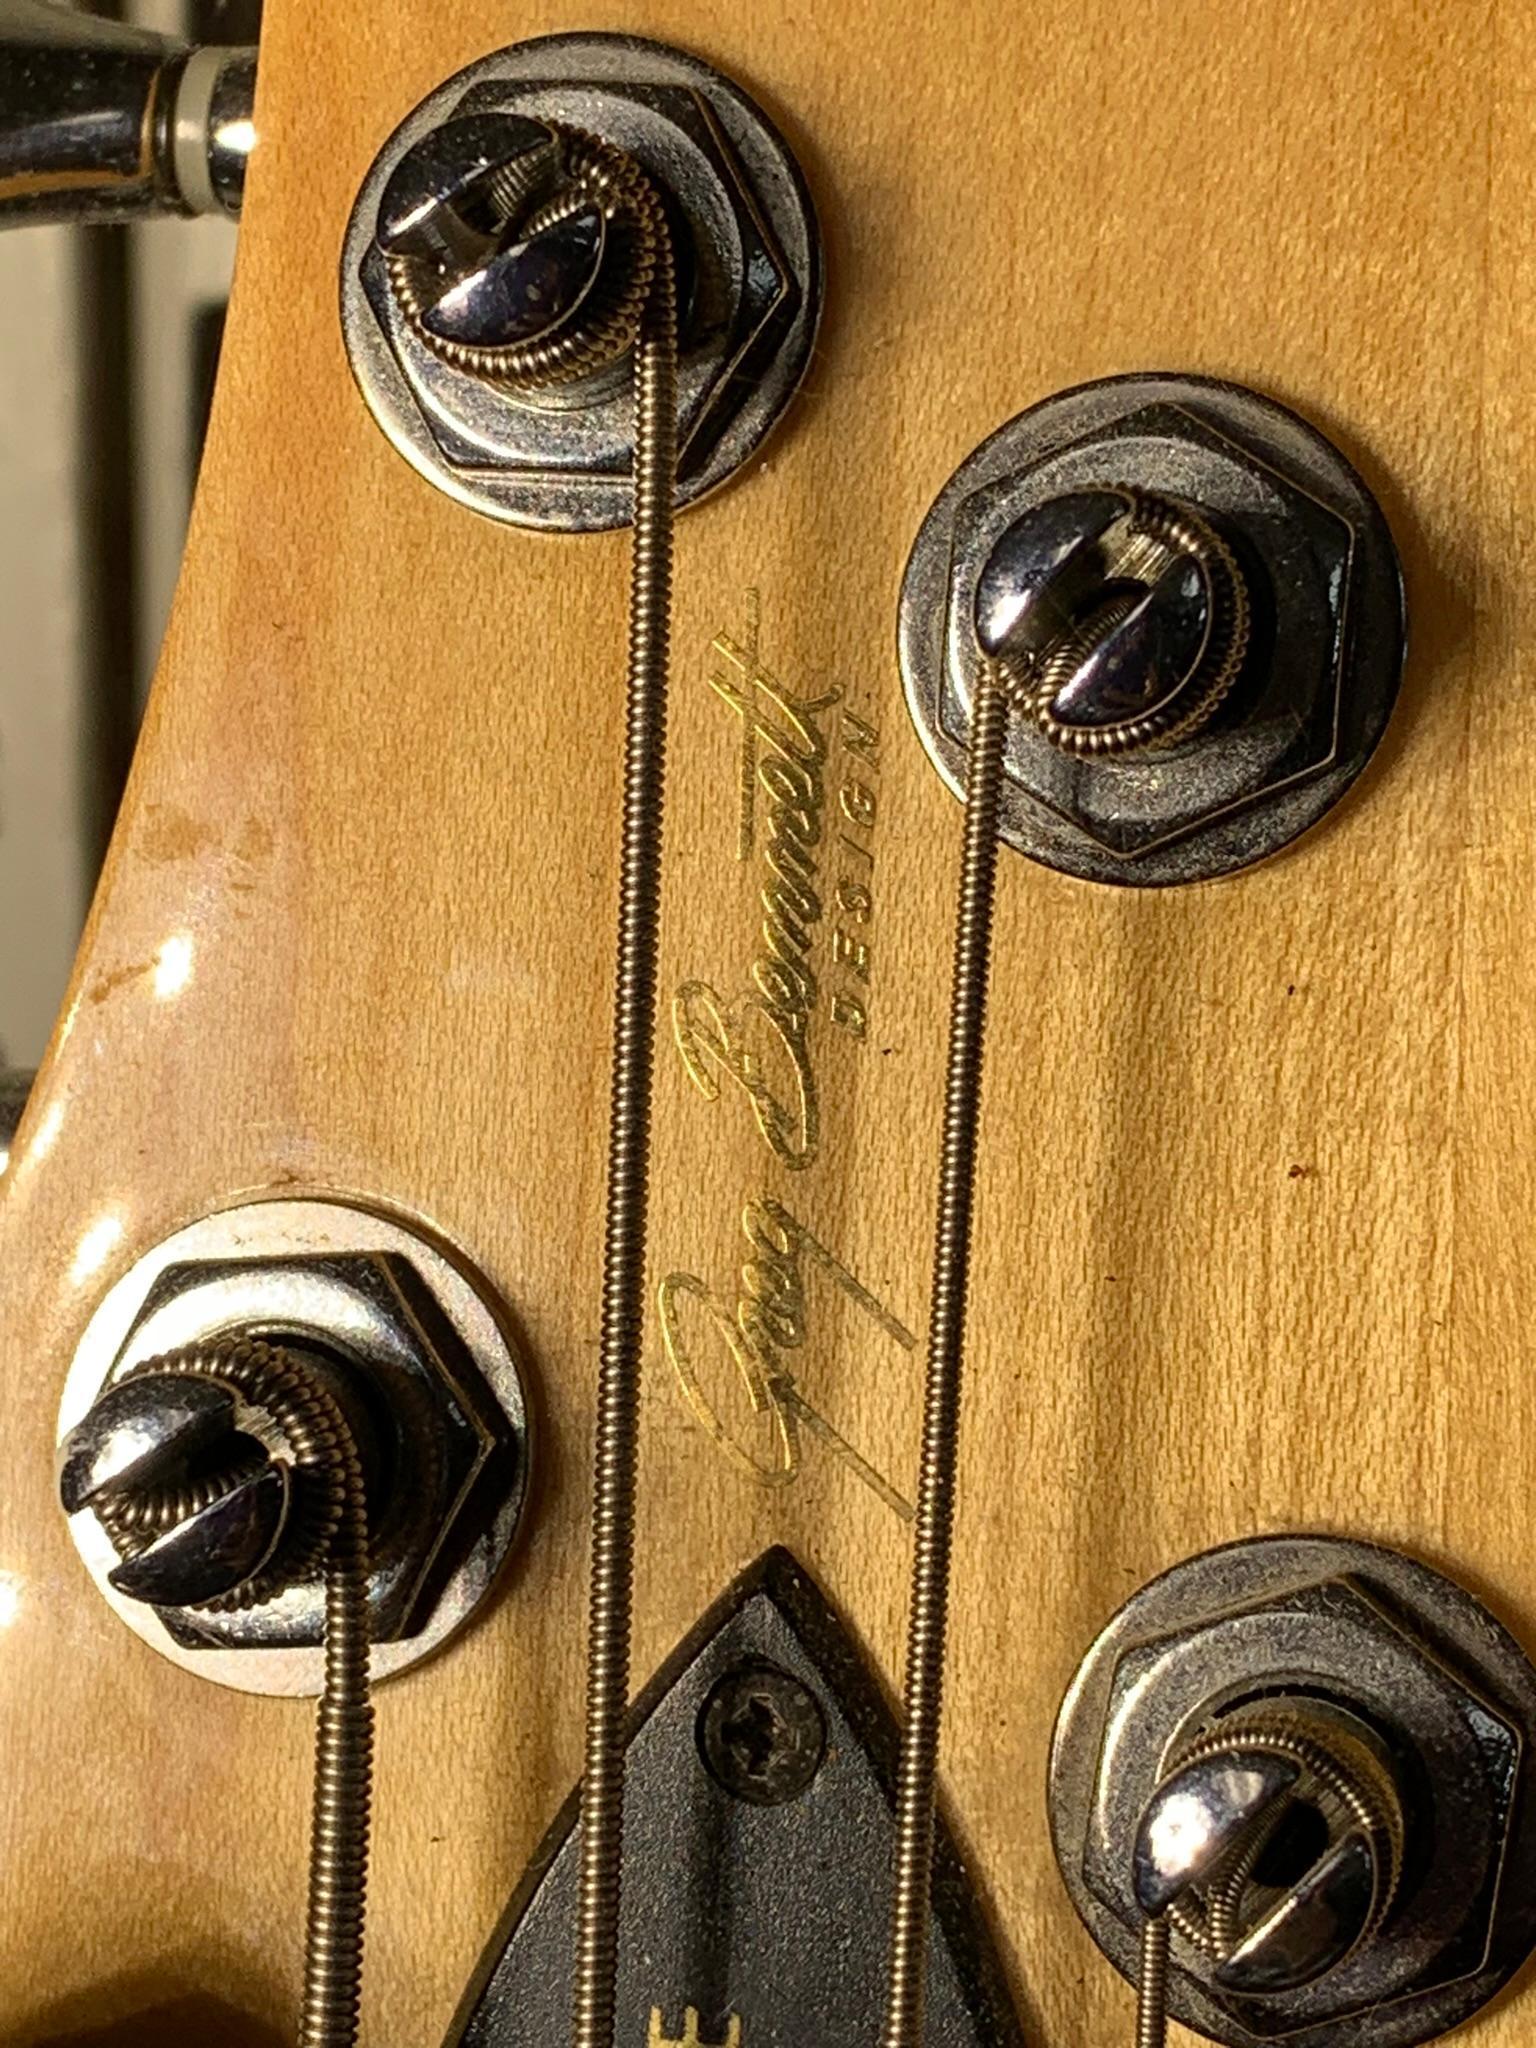 Schecter Fairlane Bass Guitar